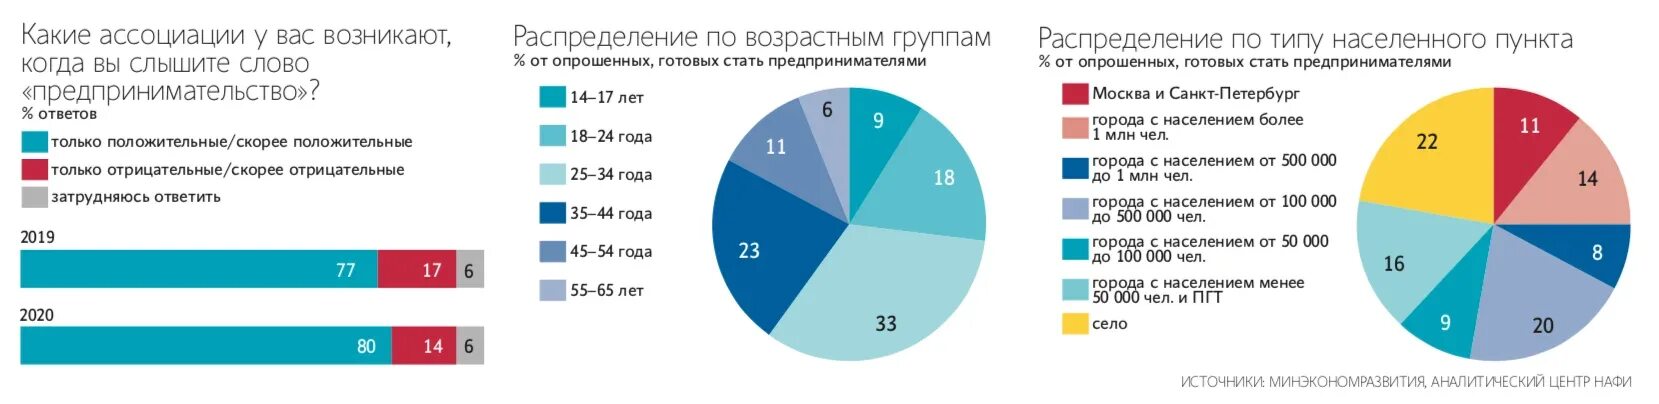 Что хотят люди в россии. Сколько процентов людей берут кредиты в России. Сколько процентов людей становятся предпринимателями. Отношение россиян к созданию собственного бизнеса в 1991. Отношение россиян к созданию собственного бизнеса в 1998 году.